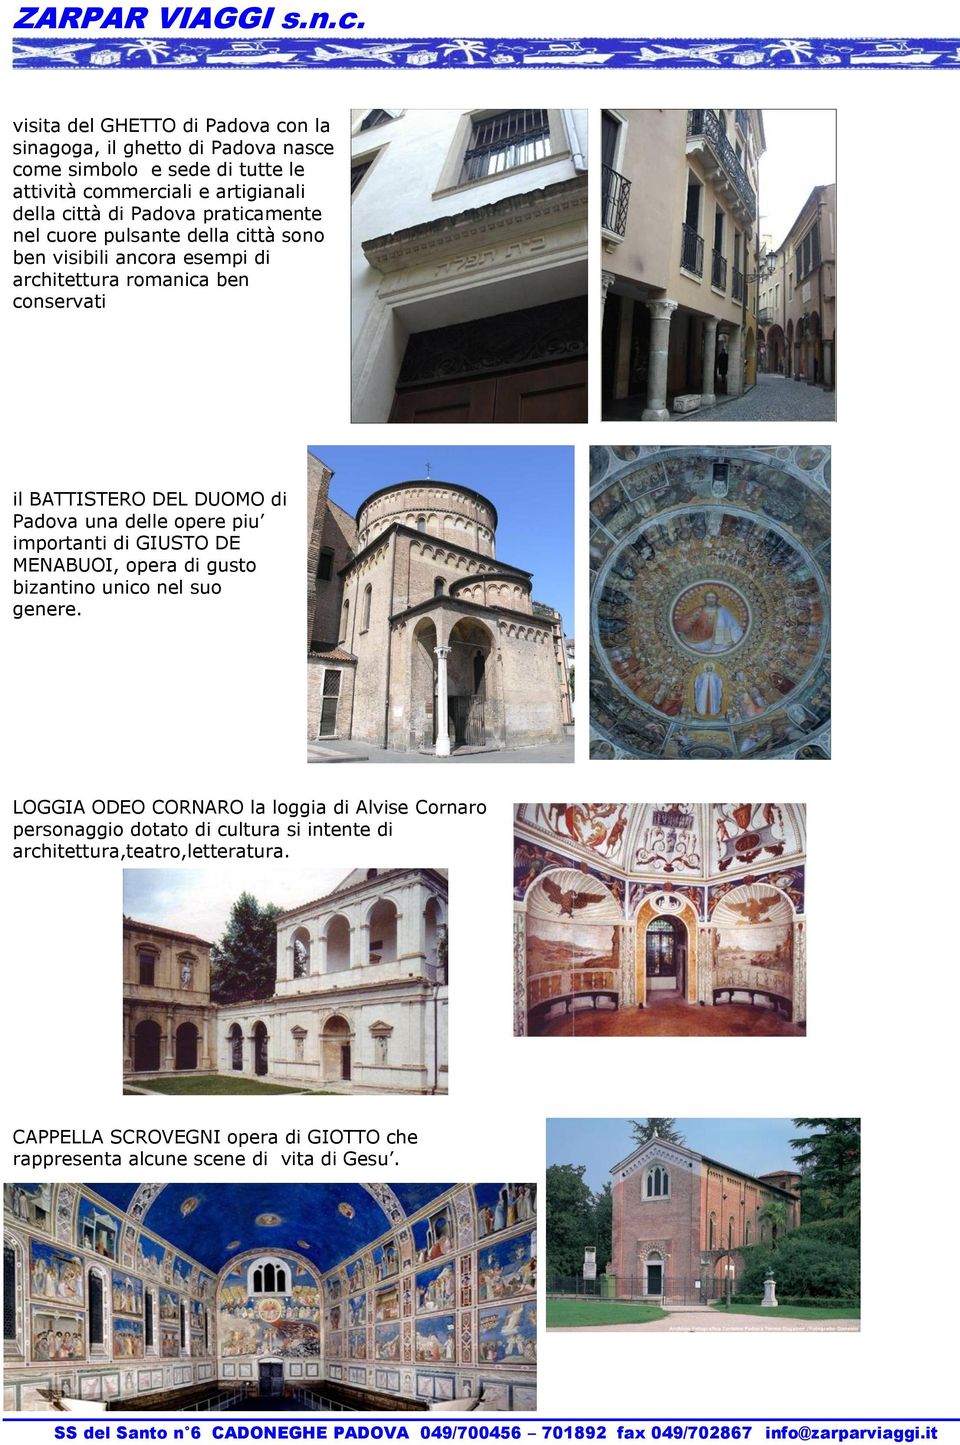 Padova una delle opere piu importanti di GIUSTO DE MENABUOI, opera di gusto bizantino unico nel suo genere.